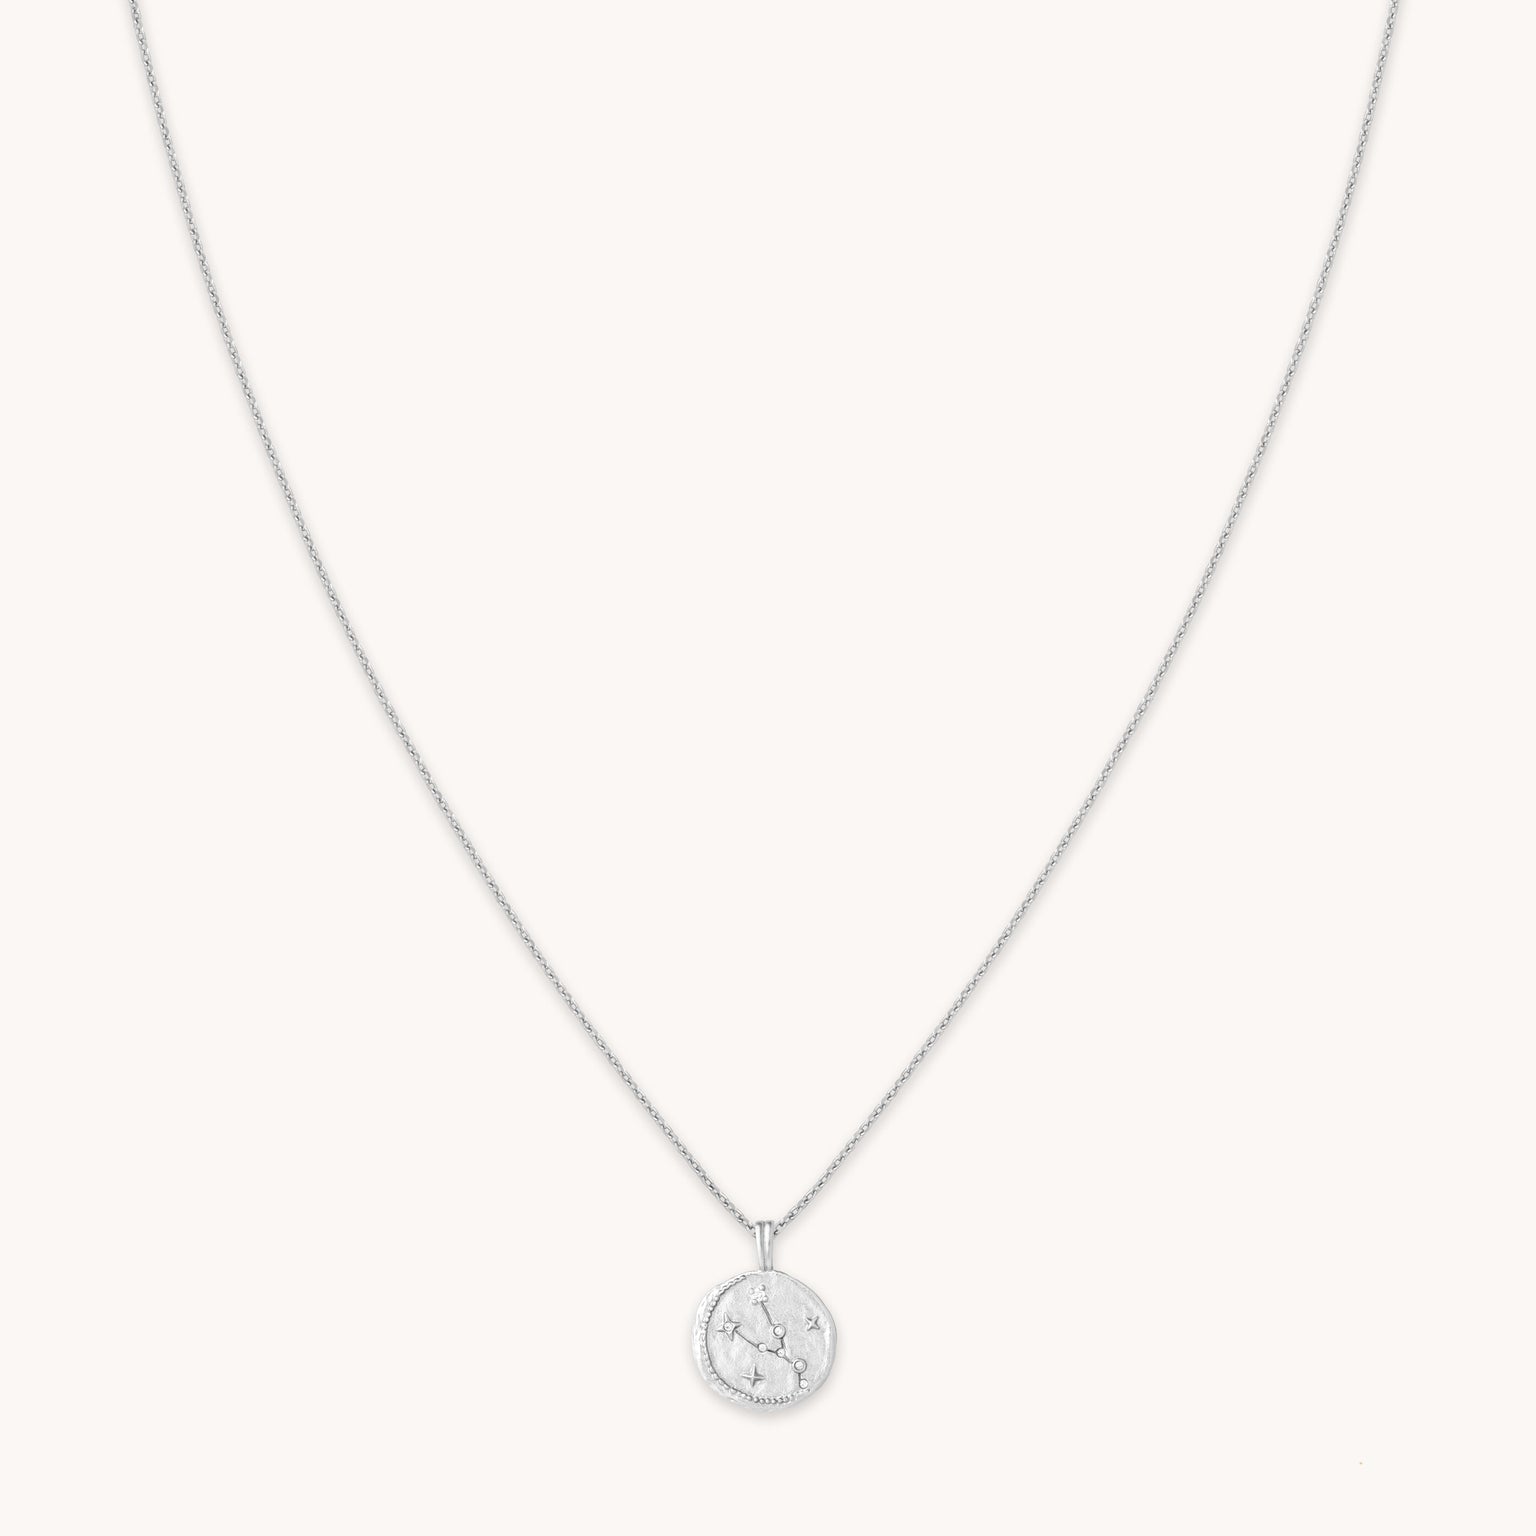 Taurus Zodiac Pendant Necklace in Silver